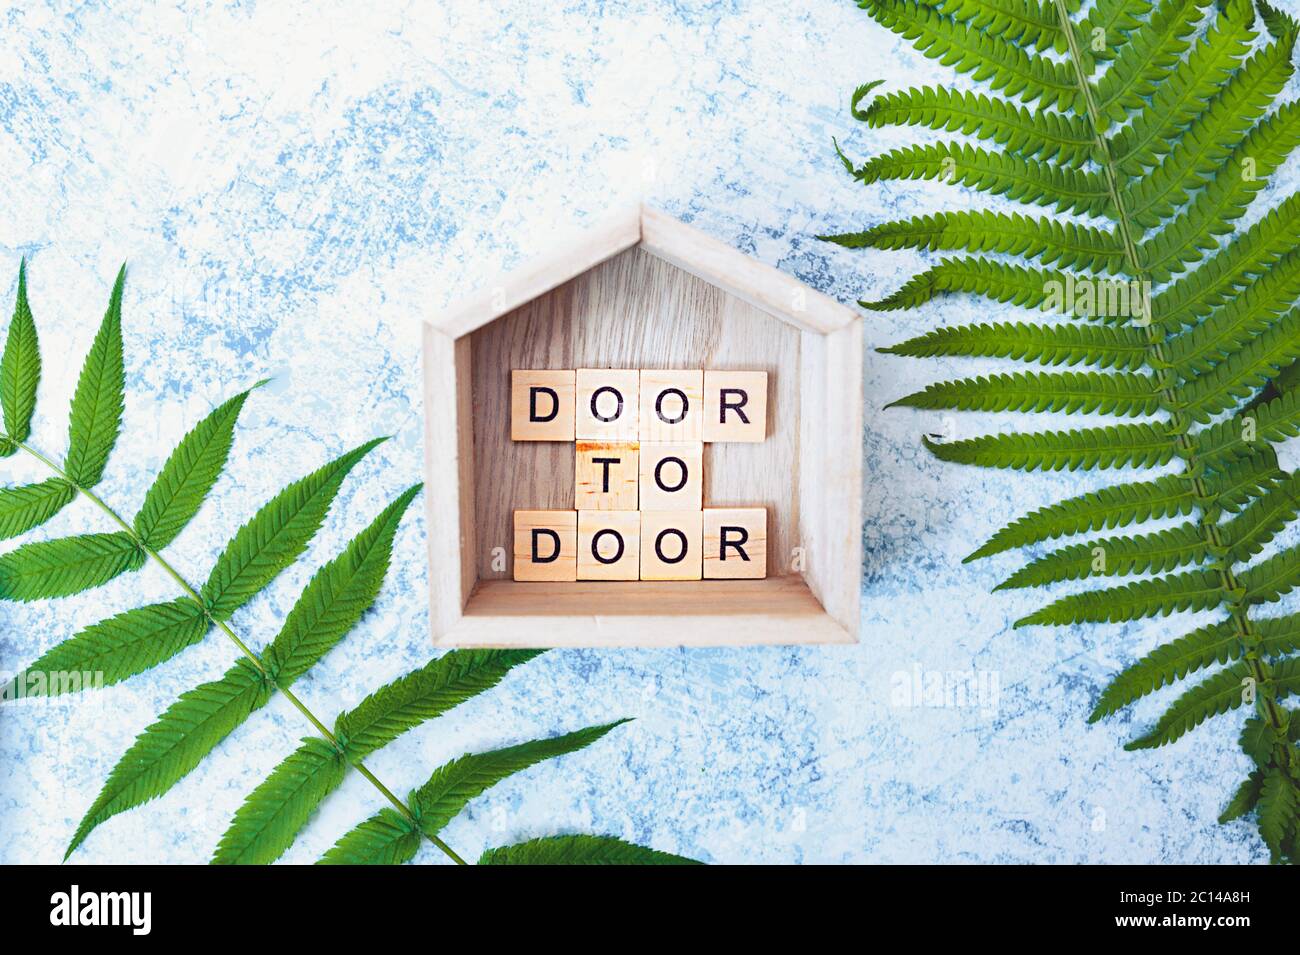 iscrizione porta a porta di lettere in legno in legno decorazione piccola casa con su un fondo grigio-blu cemento con fresche foglie verdi luminose. contactle Foto Stock